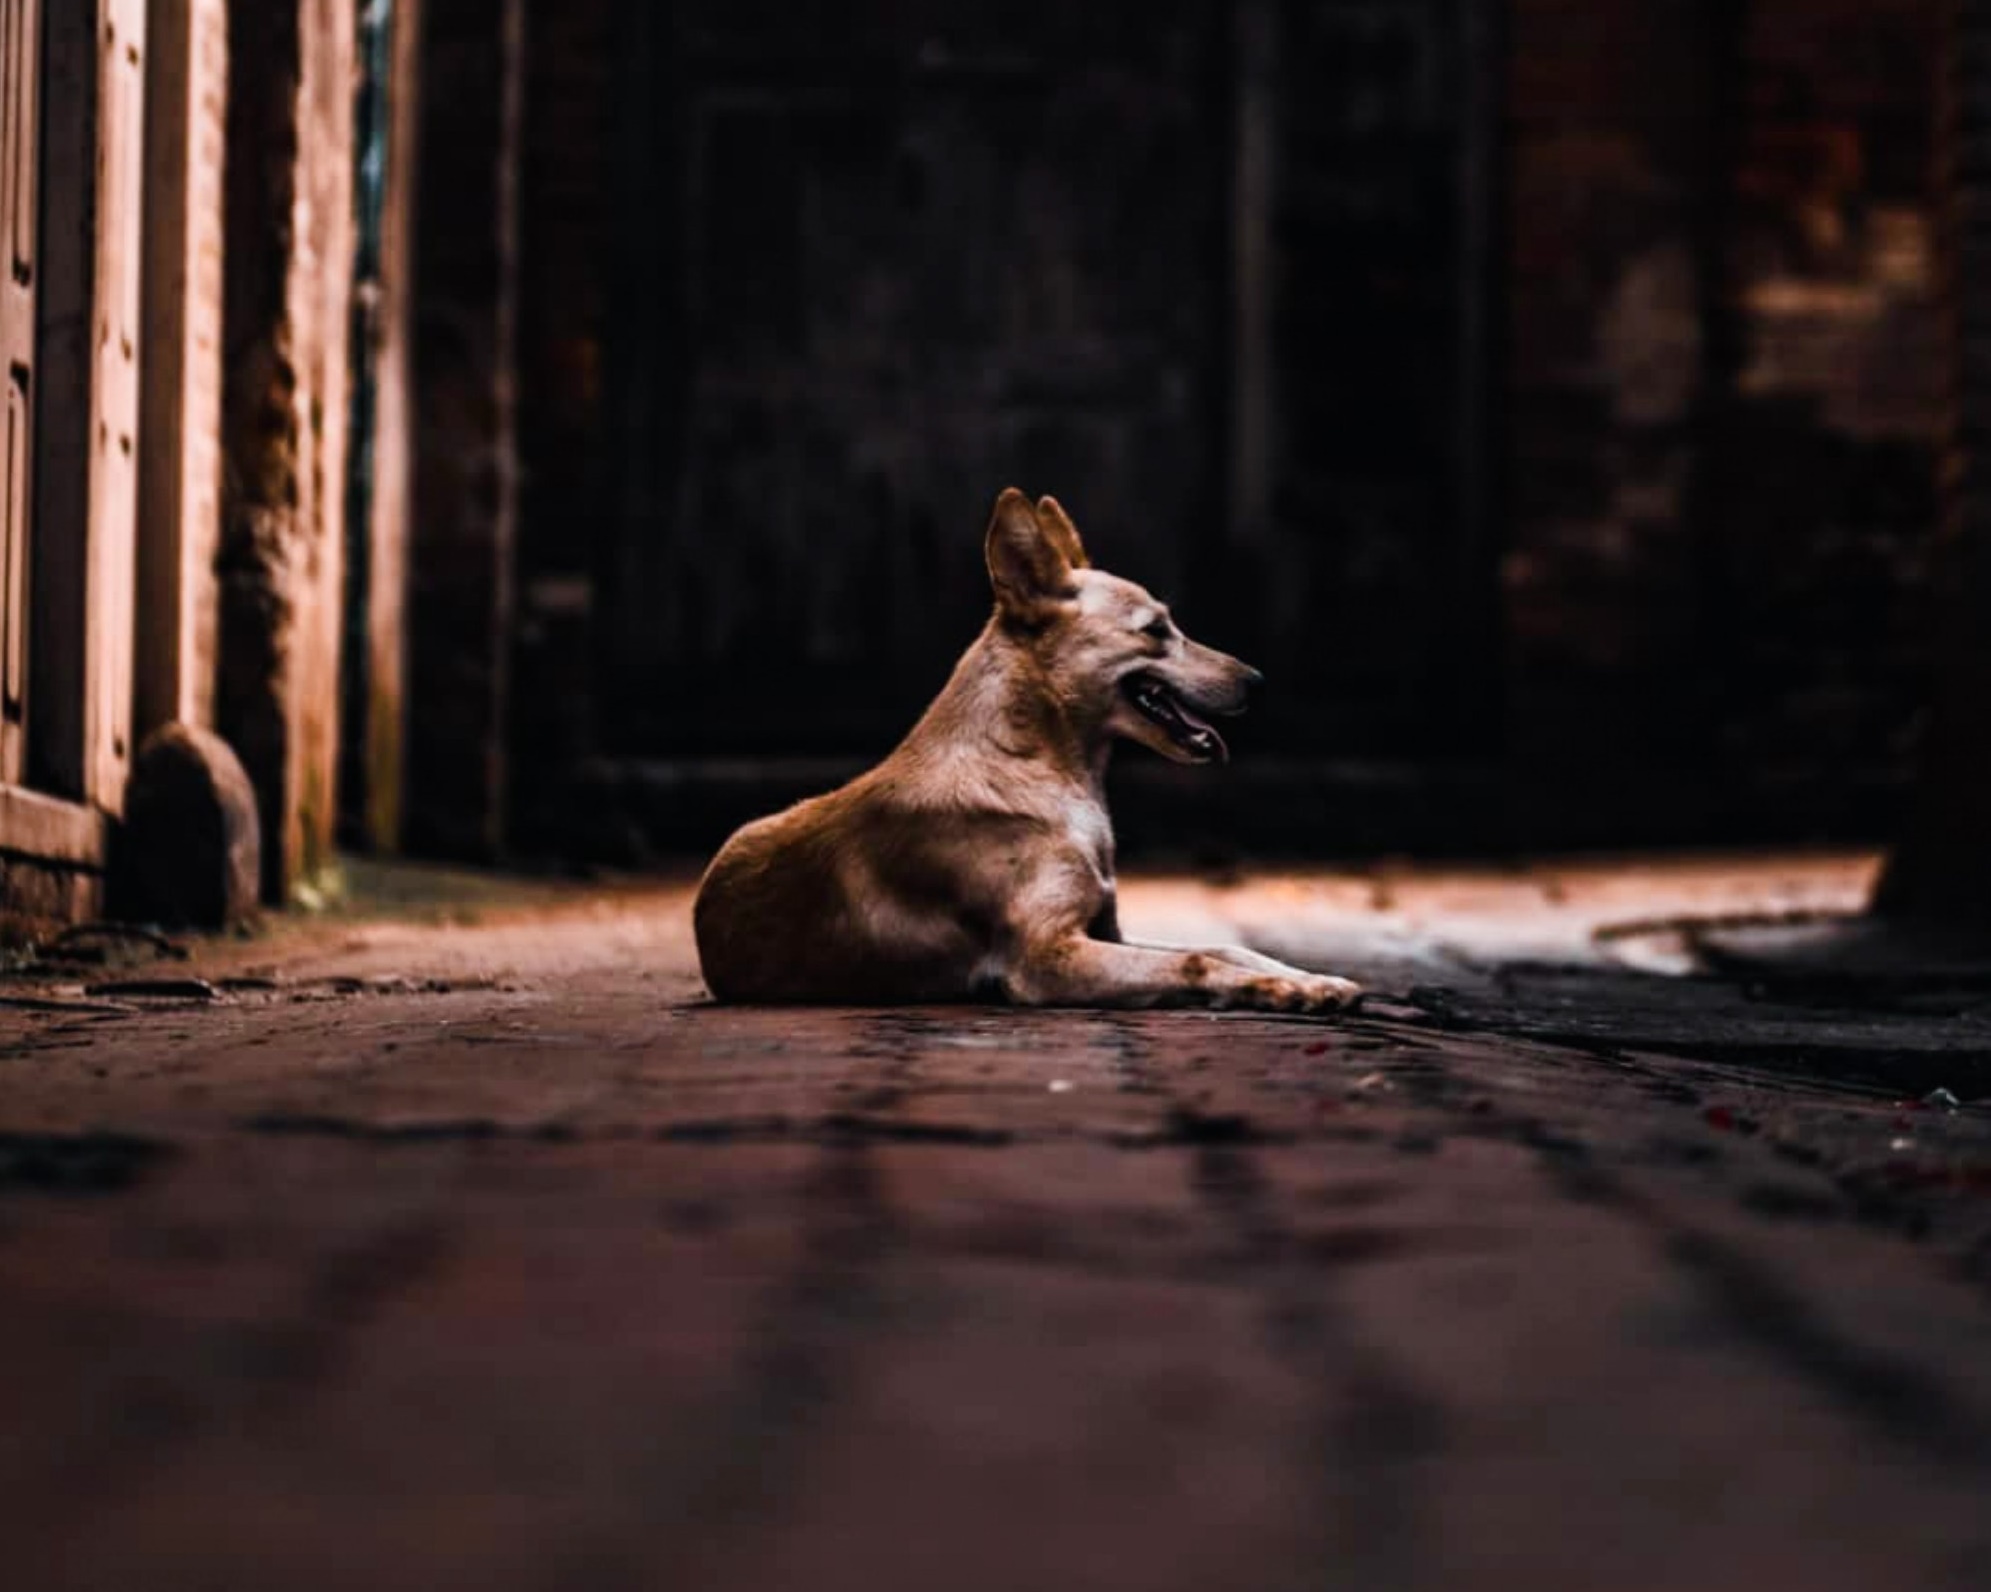 Αγέλη σκύλων Ηλεία: Επίθεση σε ηλικιωμένο ζευγάρι τρόμος στην πόλη